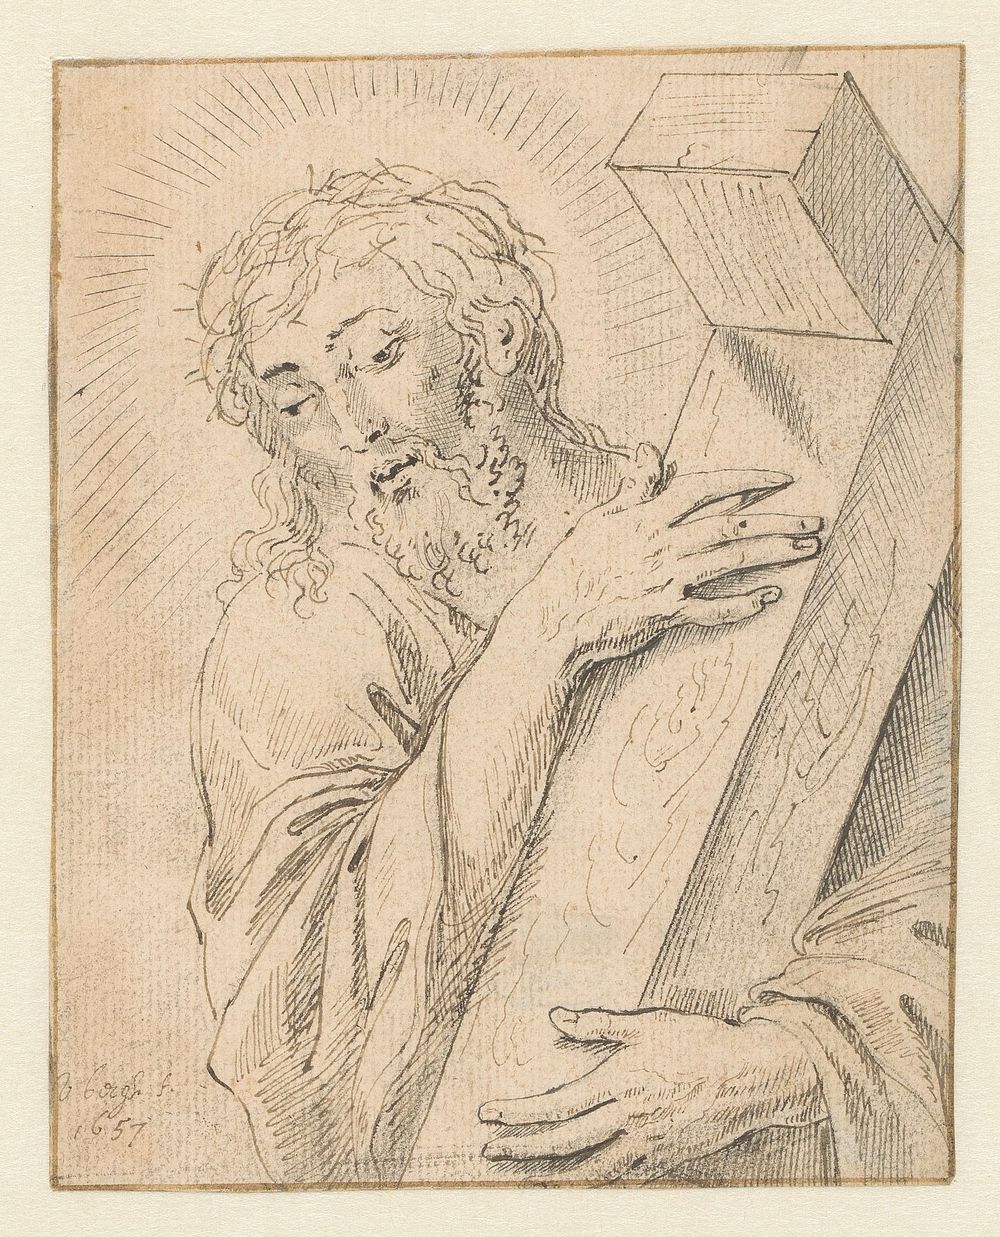 Christus met de doornenkroon en het kruis (1657) by Matthys van den Bergh